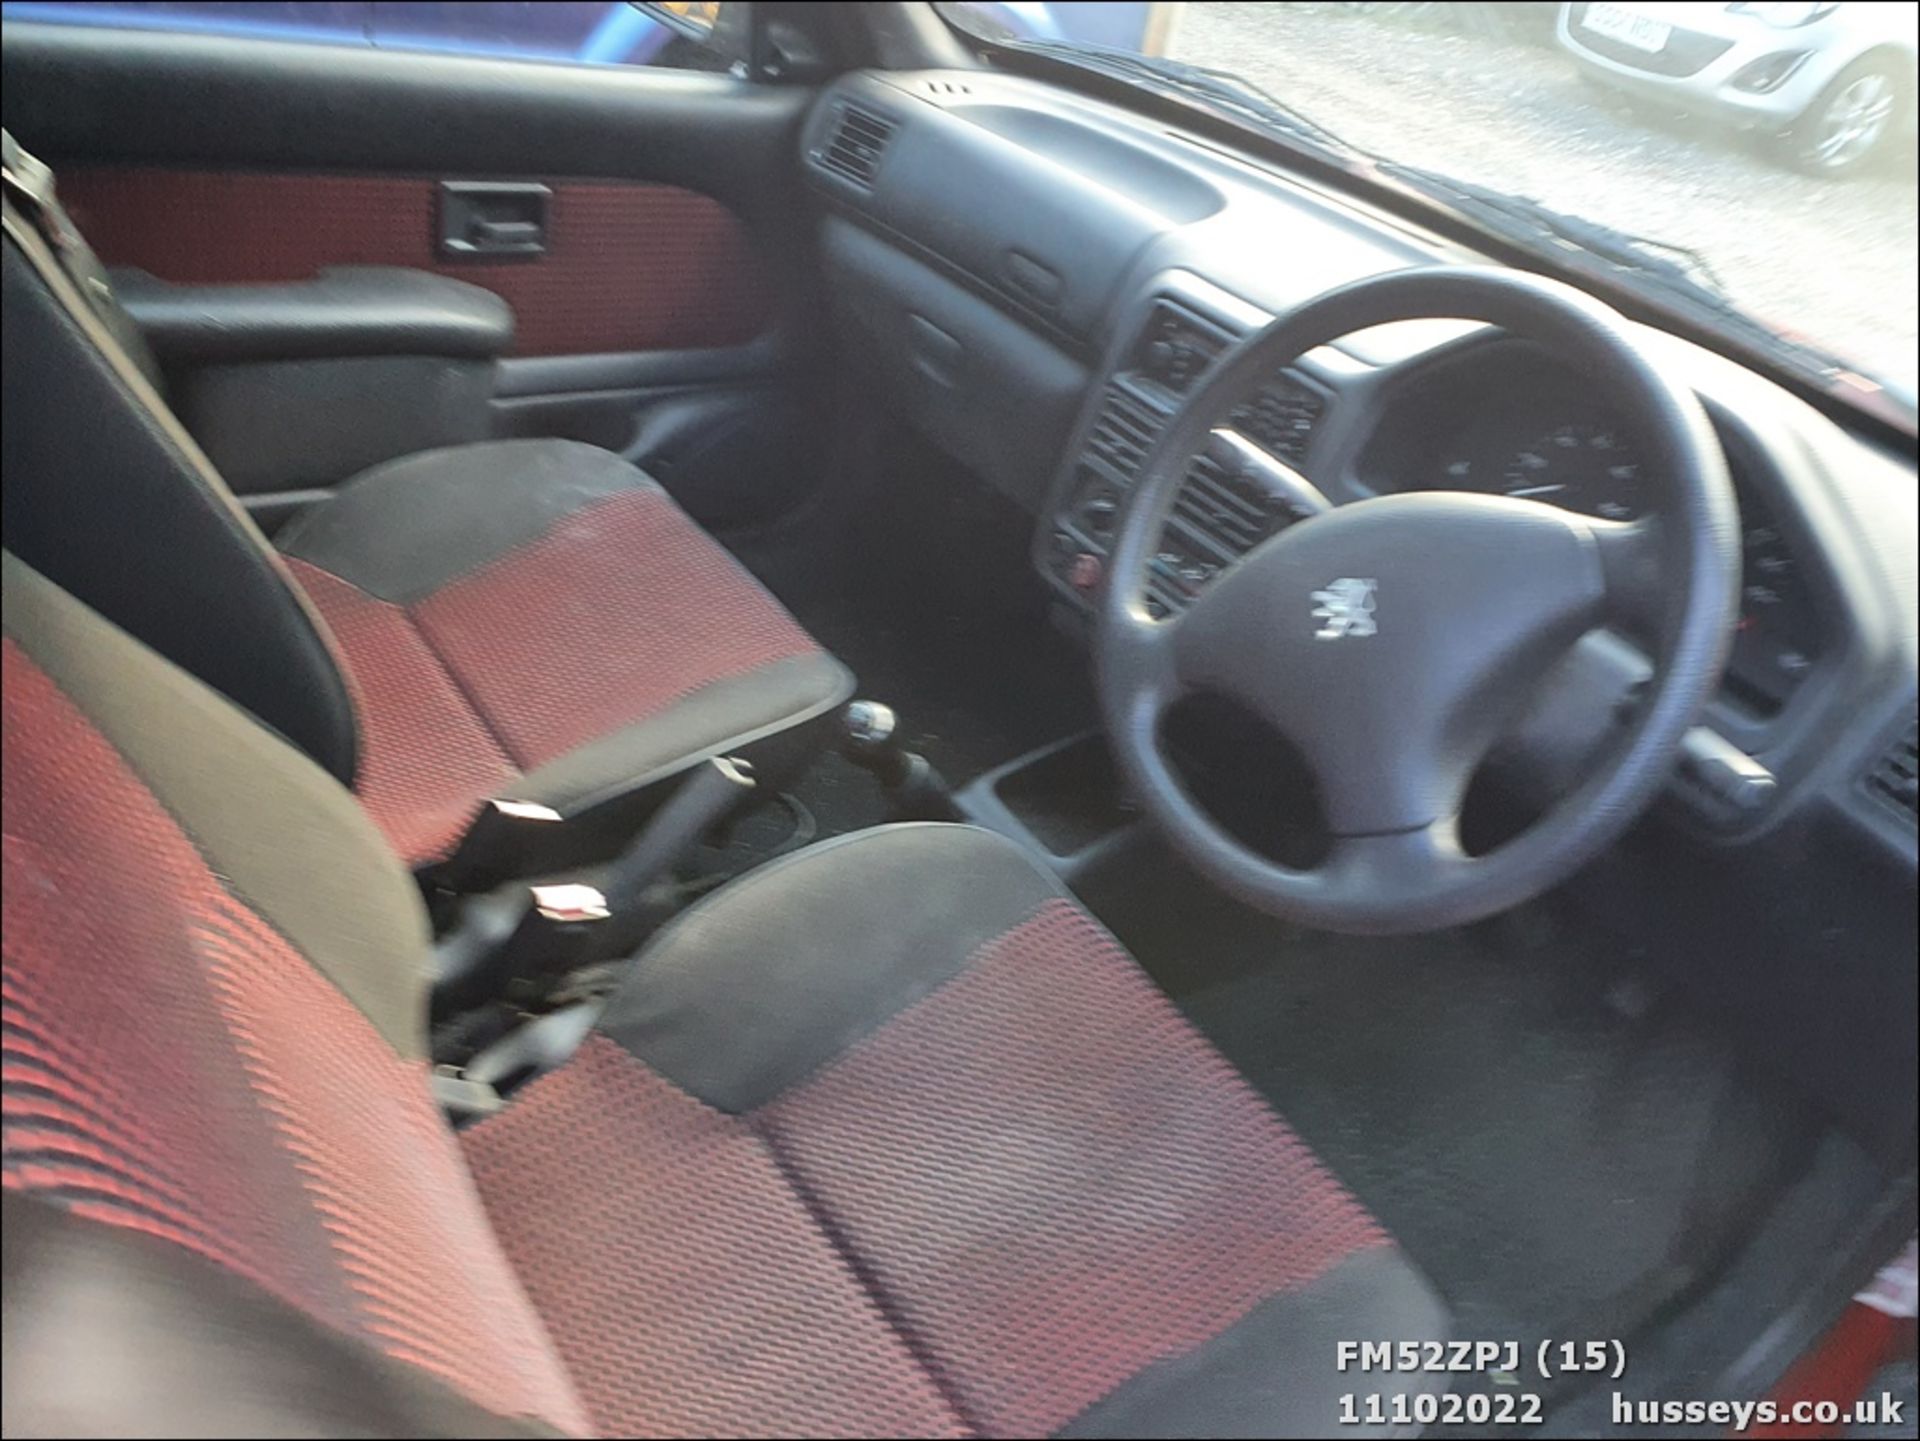 03/52 PEUGEOT 106 ZEN - 1124cc 3dr Hatchback (Red, 85k) - Image 15 of 18